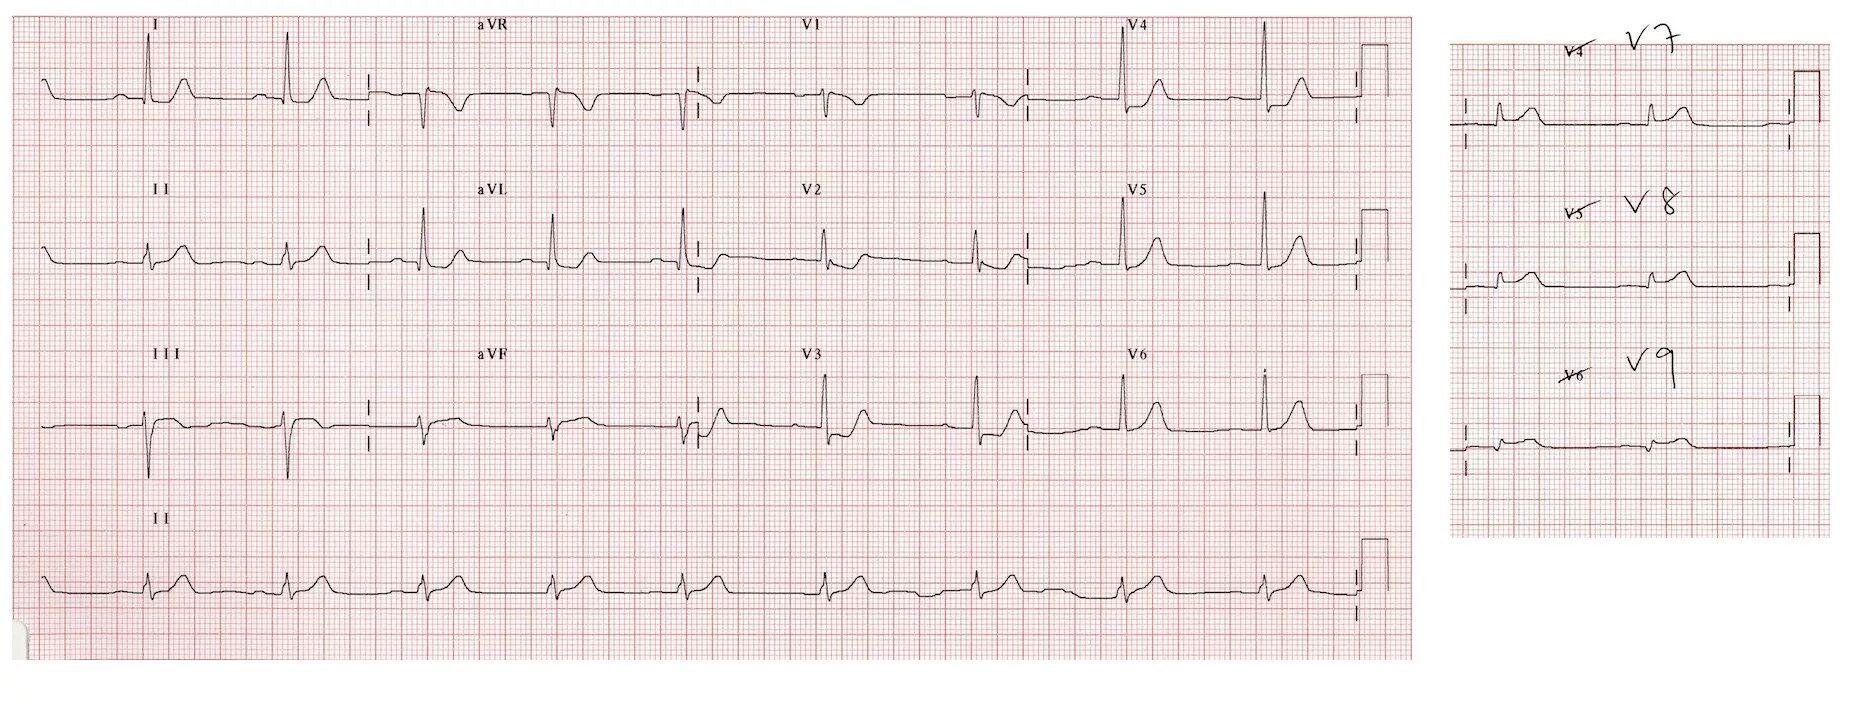 Экг подъем. ЭКГ острый инфаркт миокарда с подъемом St. Подъем сегмента St на ЭКГ v1 v2. Инфаркт миокарда с подъемом сегмента St ЭКГ. Подъем сегмента St в отведениях v2-v3-v.